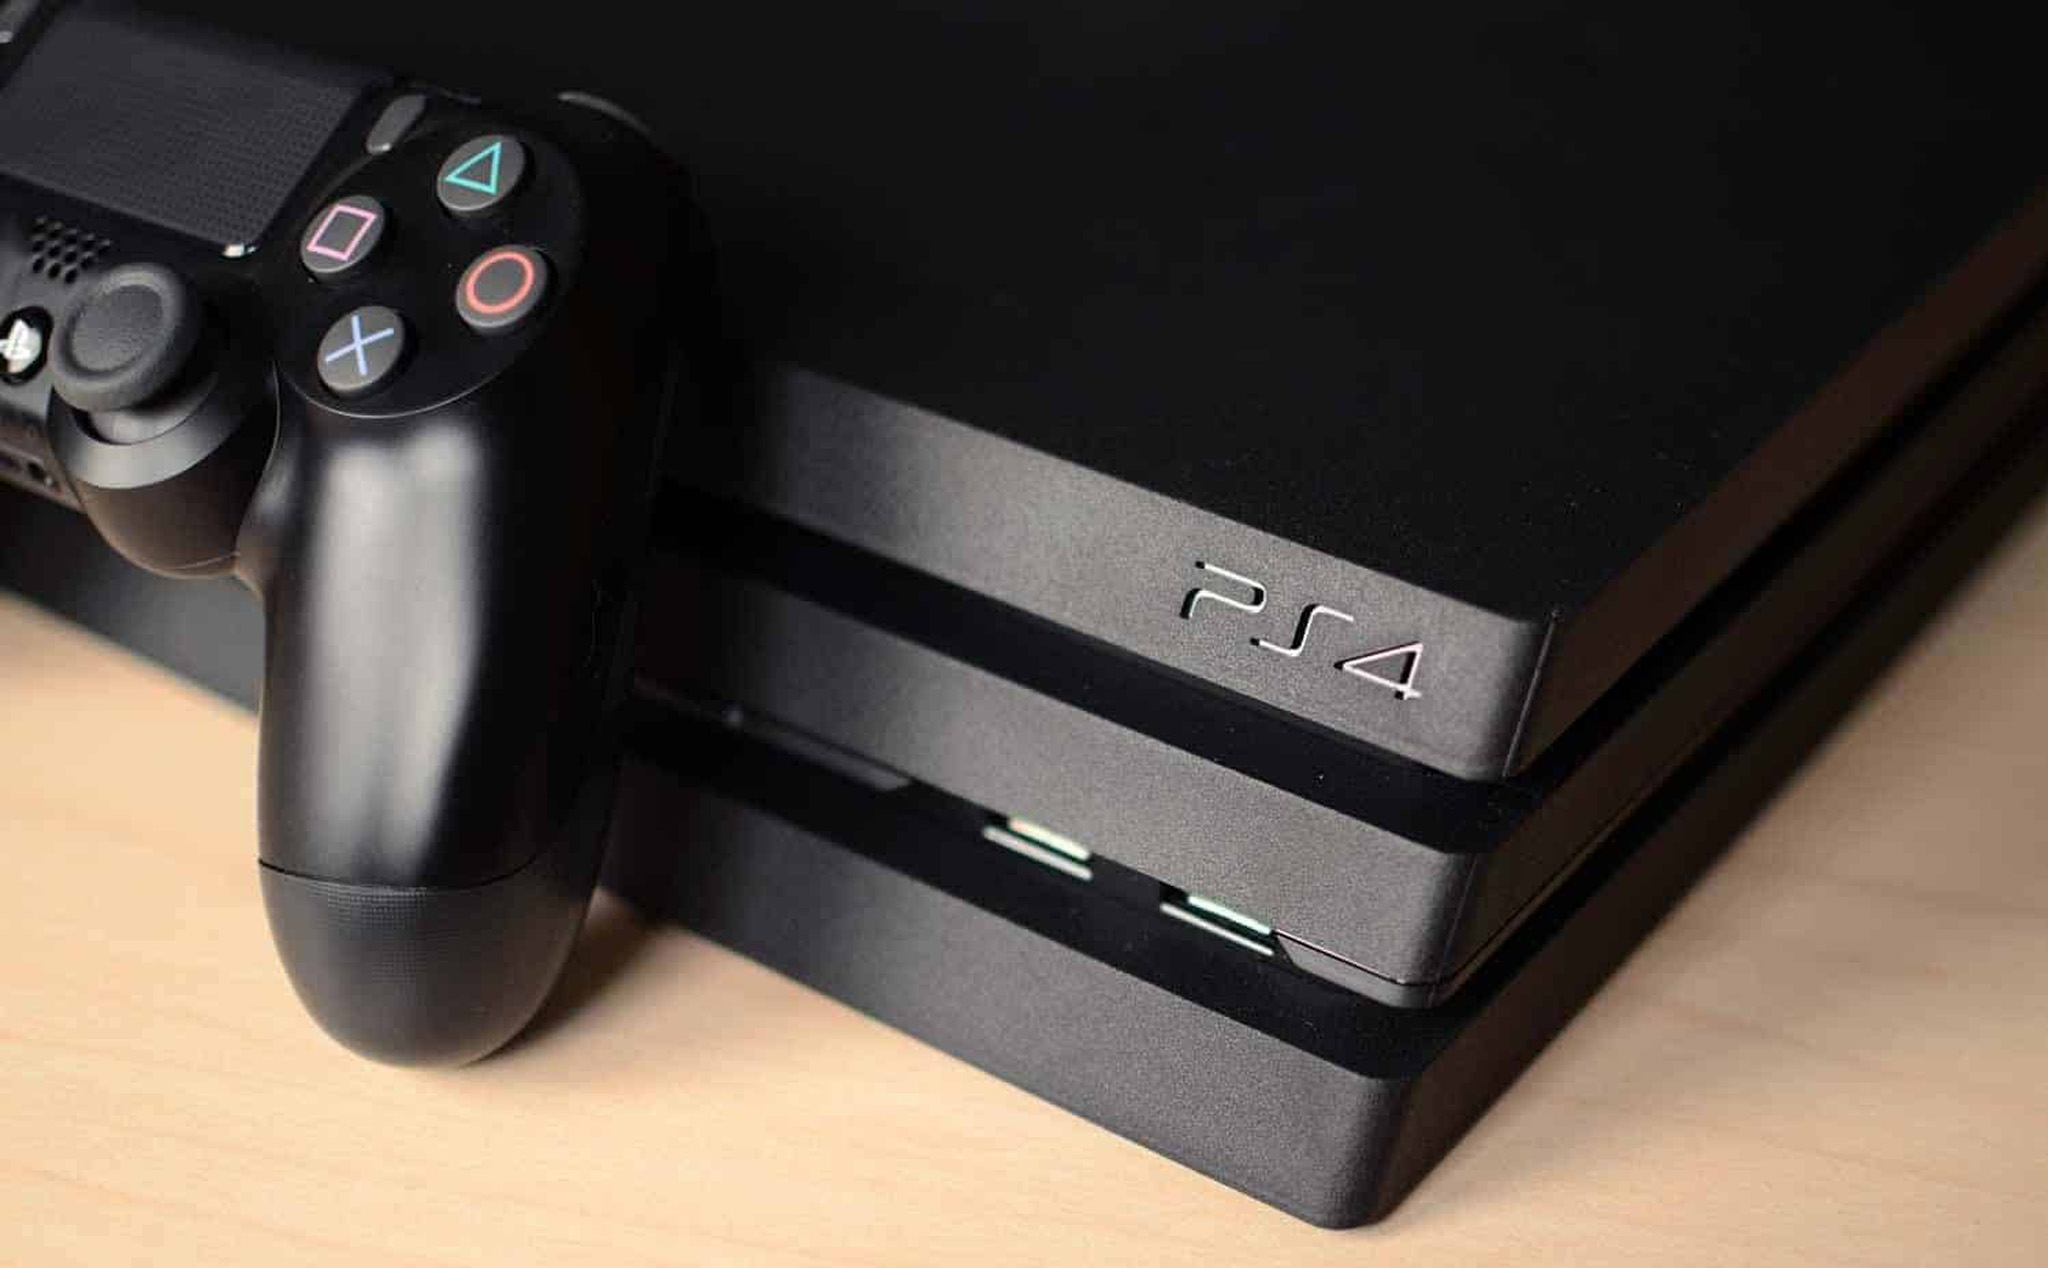 Sản xuất không đủ PS5, Sony phải tiếp tục sản xuất PS4 để phục vụ thị trường